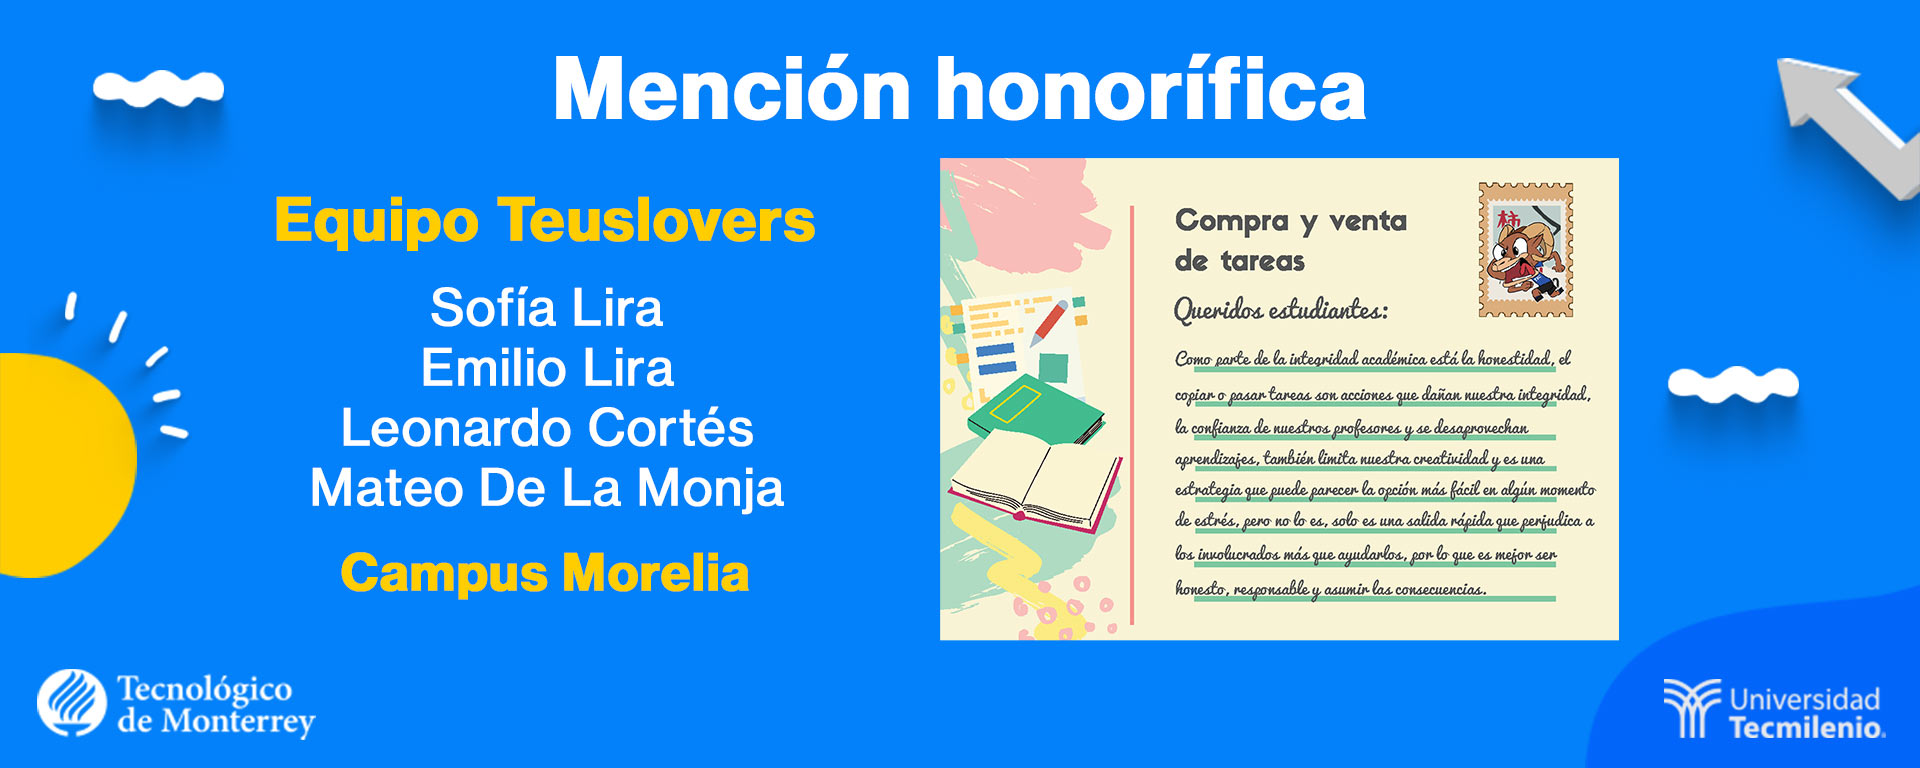 Mención honorífica 1 ganadores del concurso ¡Dale voz a la integridad académica! del Tec de Monterrey y TecMilenio